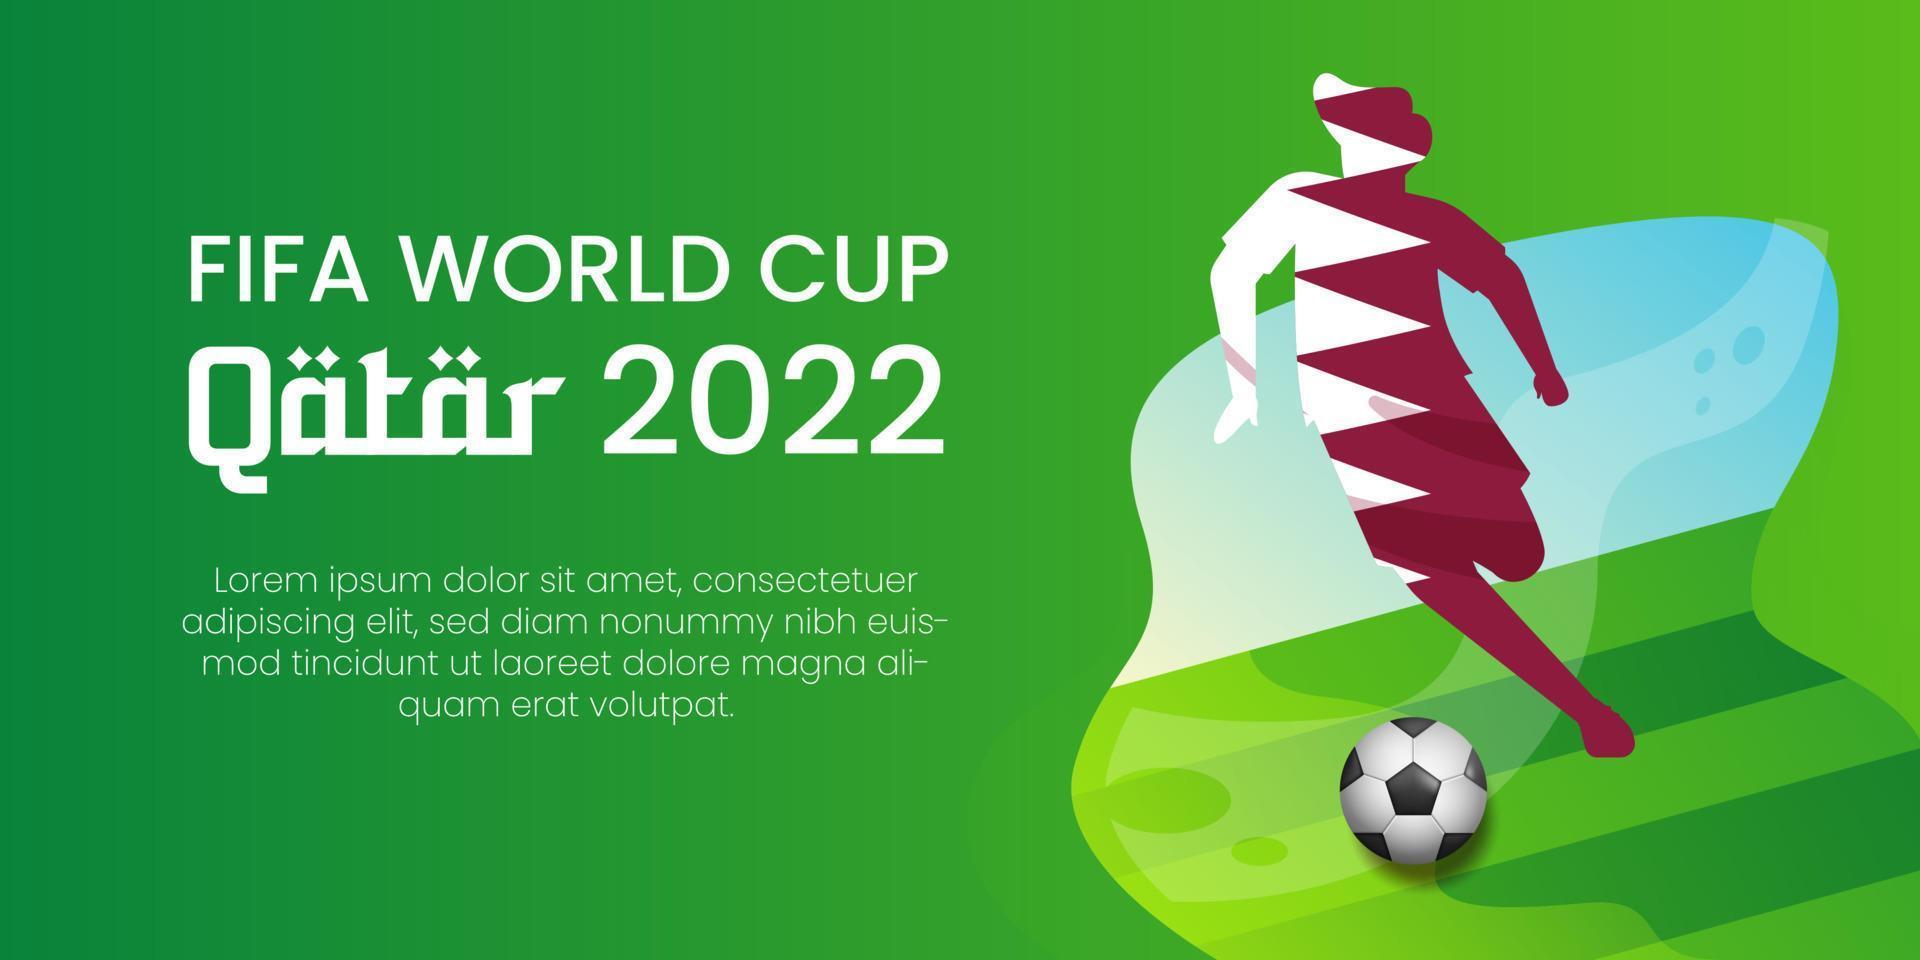 zuiden sumatera, Indonesië, 21-11-2022- fifa Amerikaans voetbal wereld kop qatar 2022 achtergrond ontwerp sjabloon. eps 10. vector